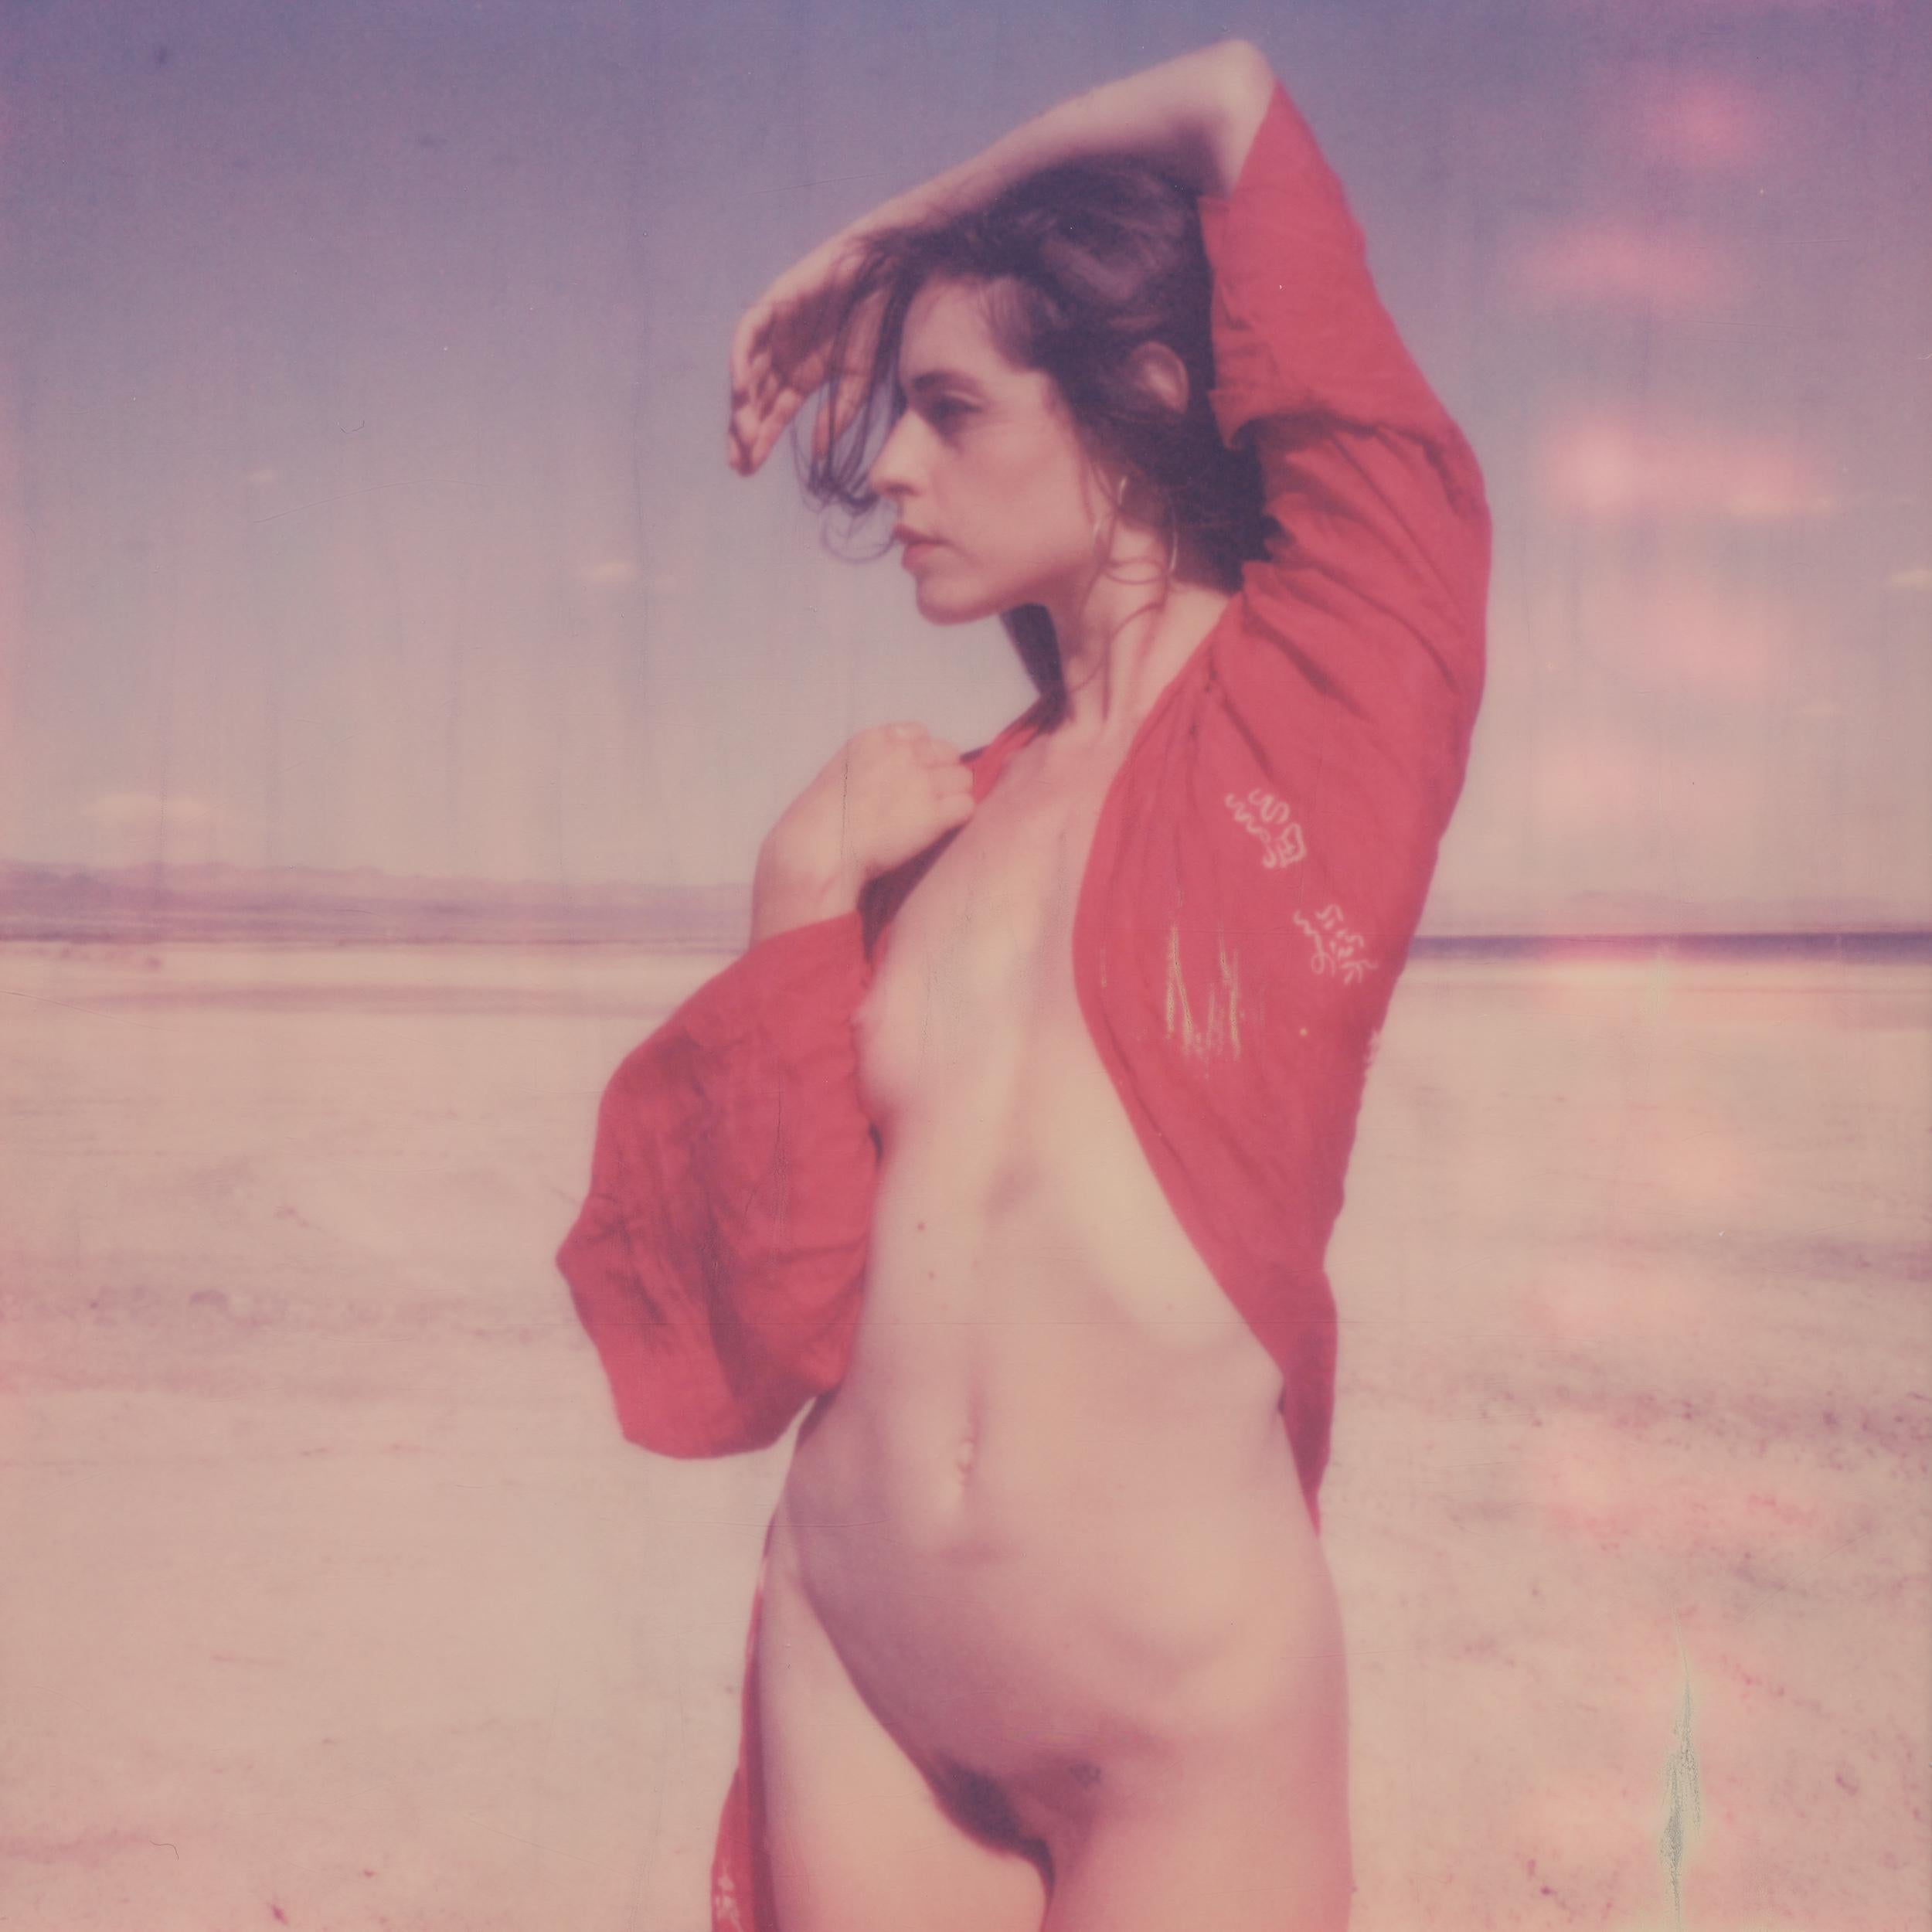 Kirsten Thys van den Audenaerde Landscape Photograph – Rot – Zeitgenössisch, Polaroid, Nude, Farbe